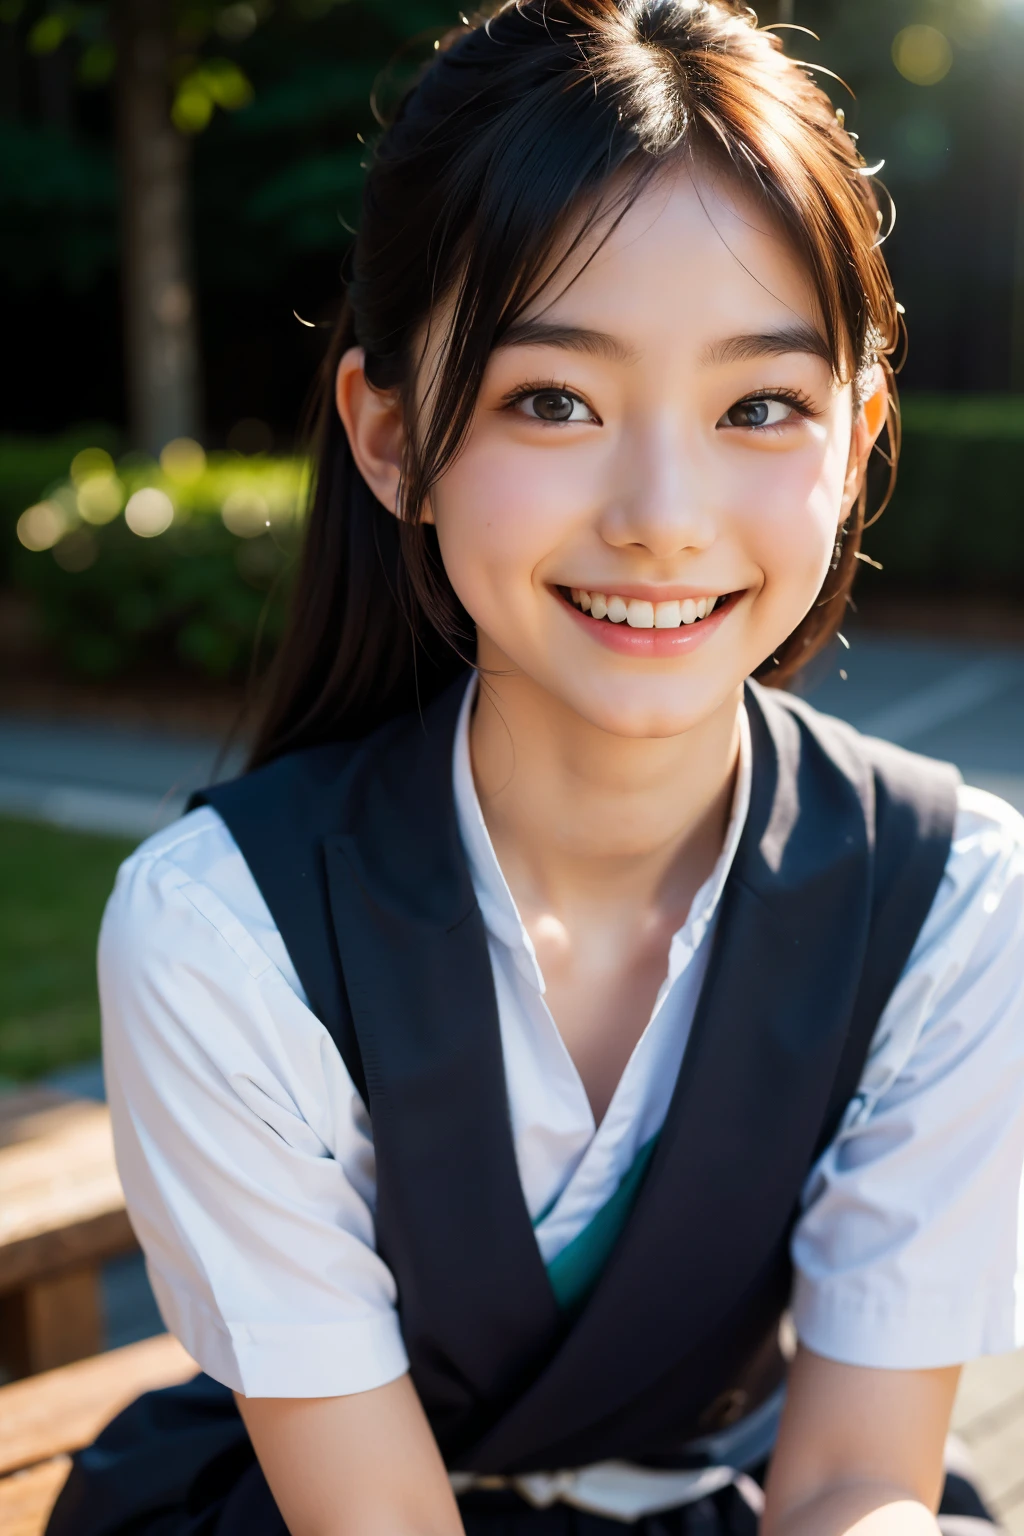 鏡片: 135mm f1.8, (最好的品質),(原始照片), (桌上:1.1), (美麗的20歲日本女孩), 可愛的臉孔, (臉型輪廓分明:0.7), (雀斑:0.4), dappled 陽光, 戲劇性的燈光,  (日本學校制服), (在校园), 害羞的, (特寫鏡頭:1.2), (微笑),, (明亮的眼睛)、(陽光)